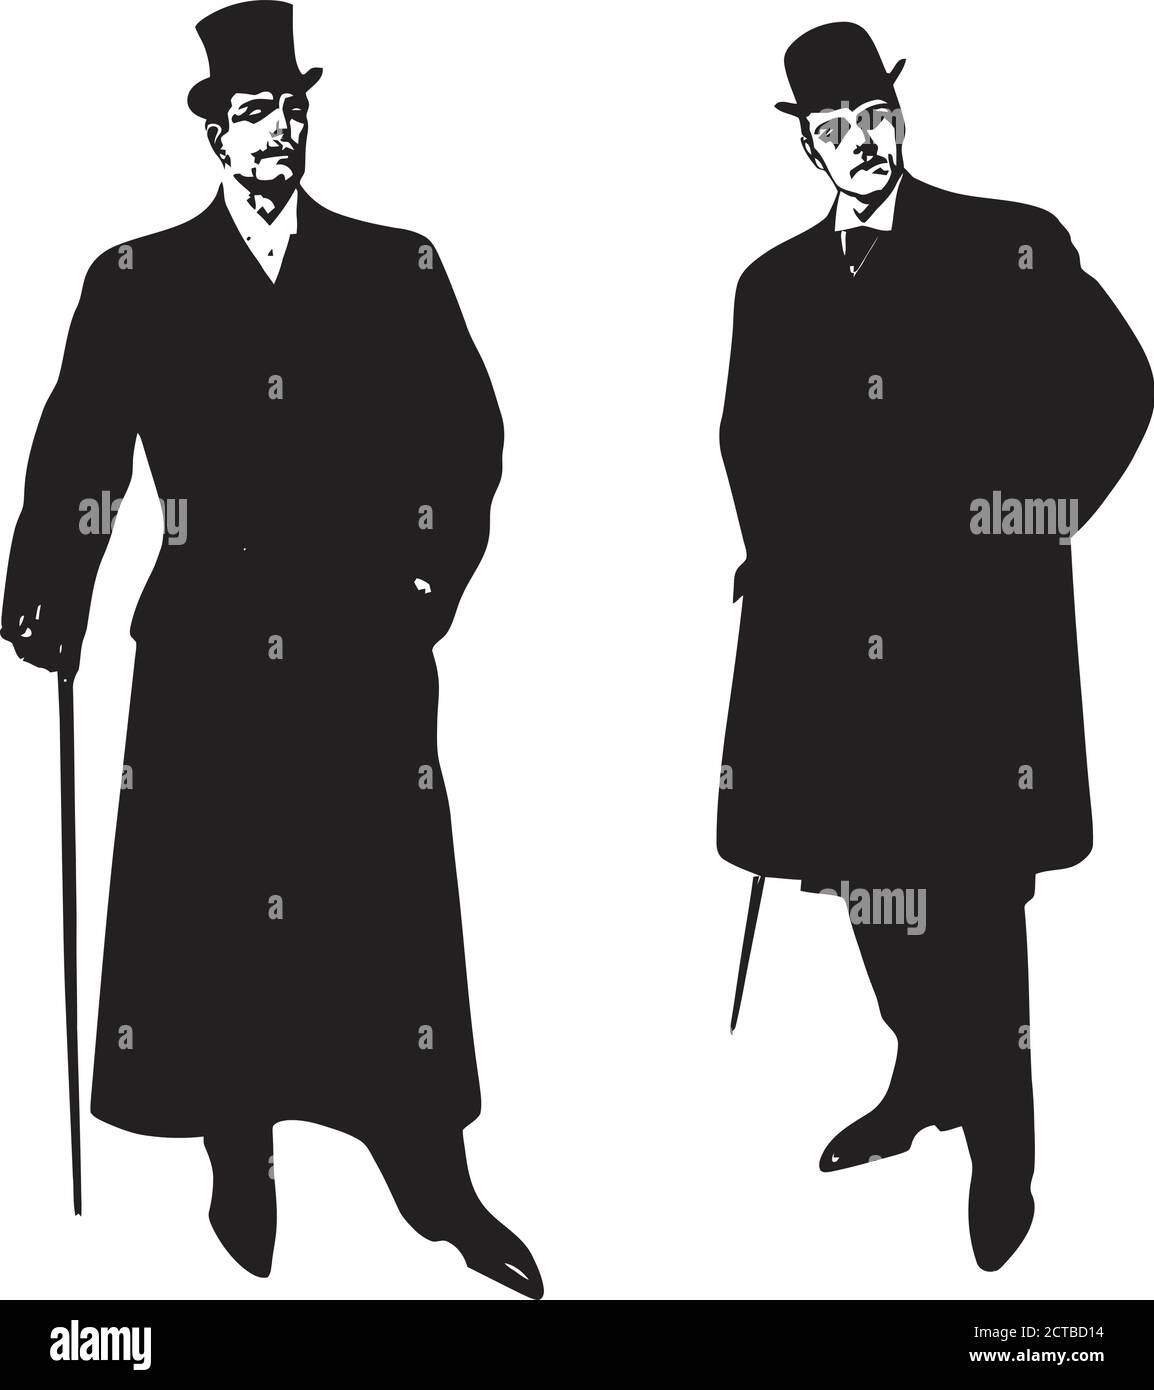 Vecteur de la mode rétro pour homme. 1900 Illustration de Vecteur